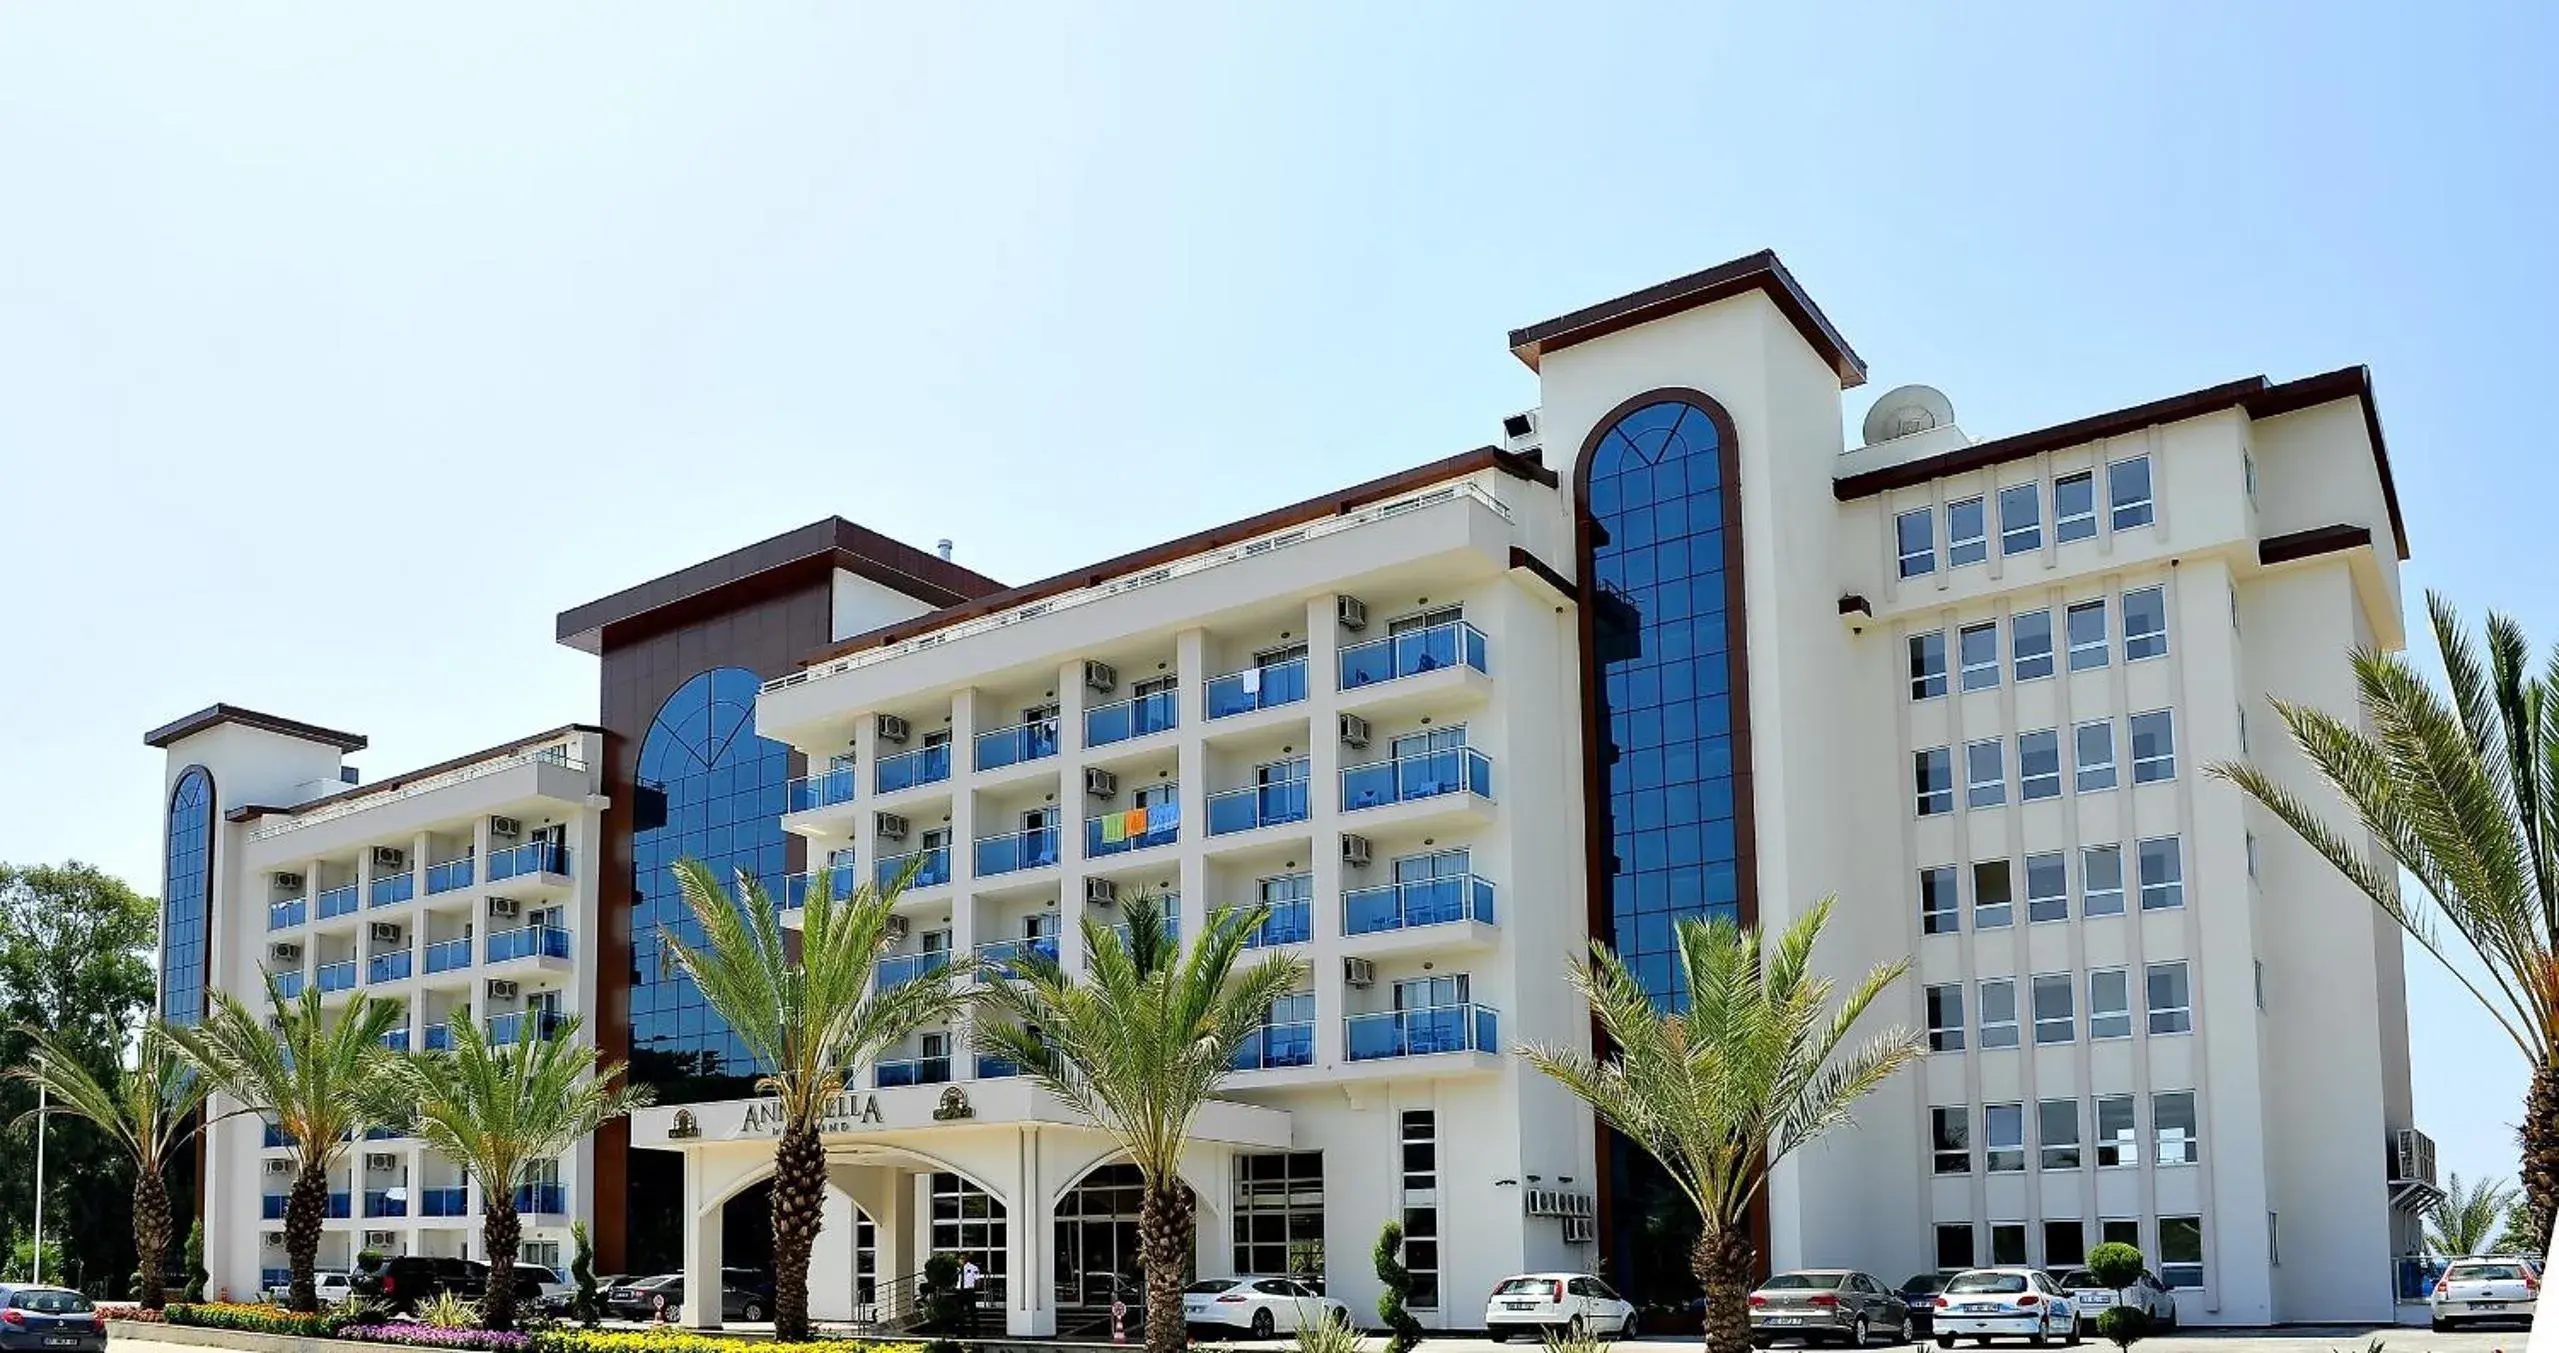 Property building in Annabella Diamond Hotel - All Inclusive